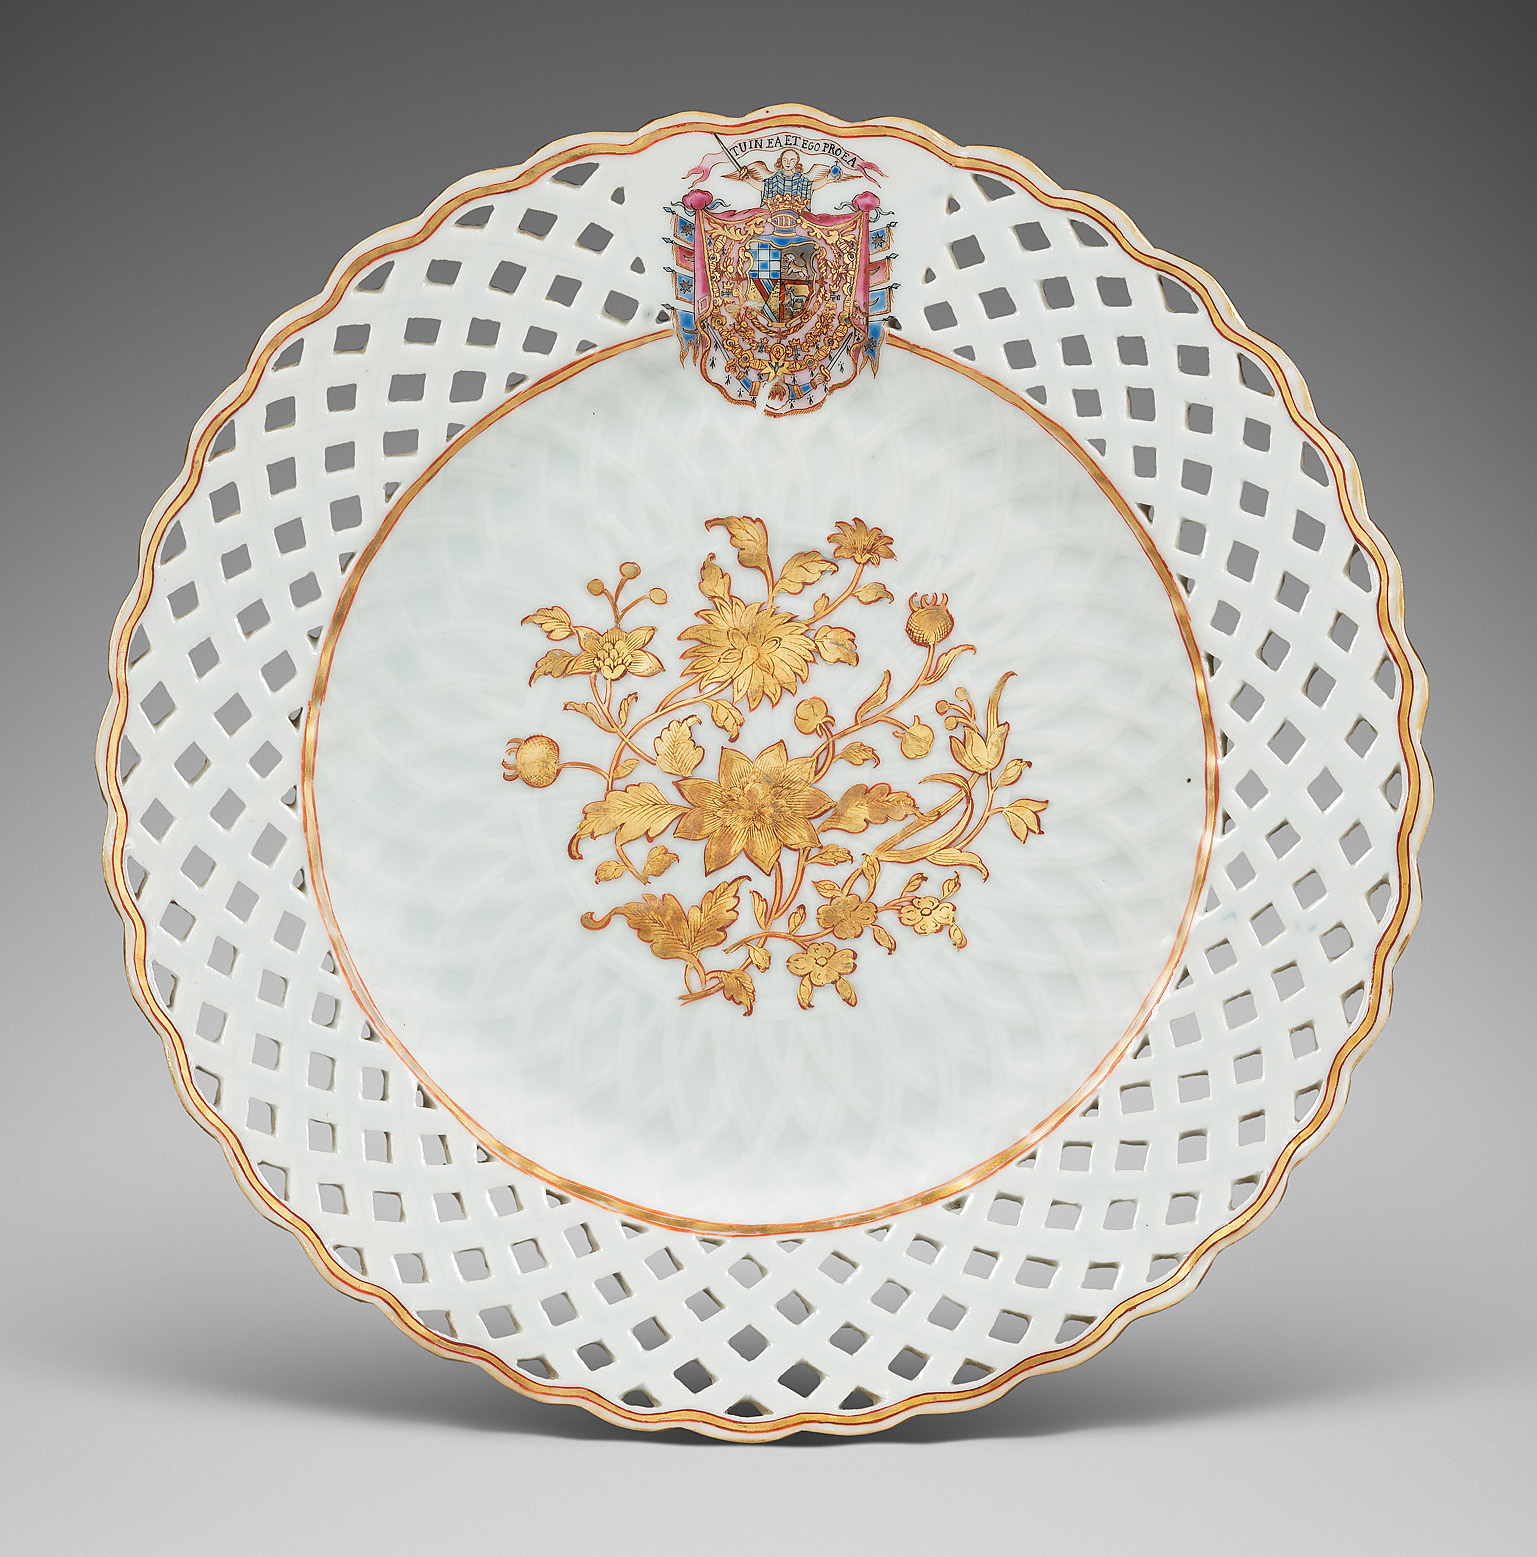 Porcelain Qianlong period (1736-1795), ca. 1765, China